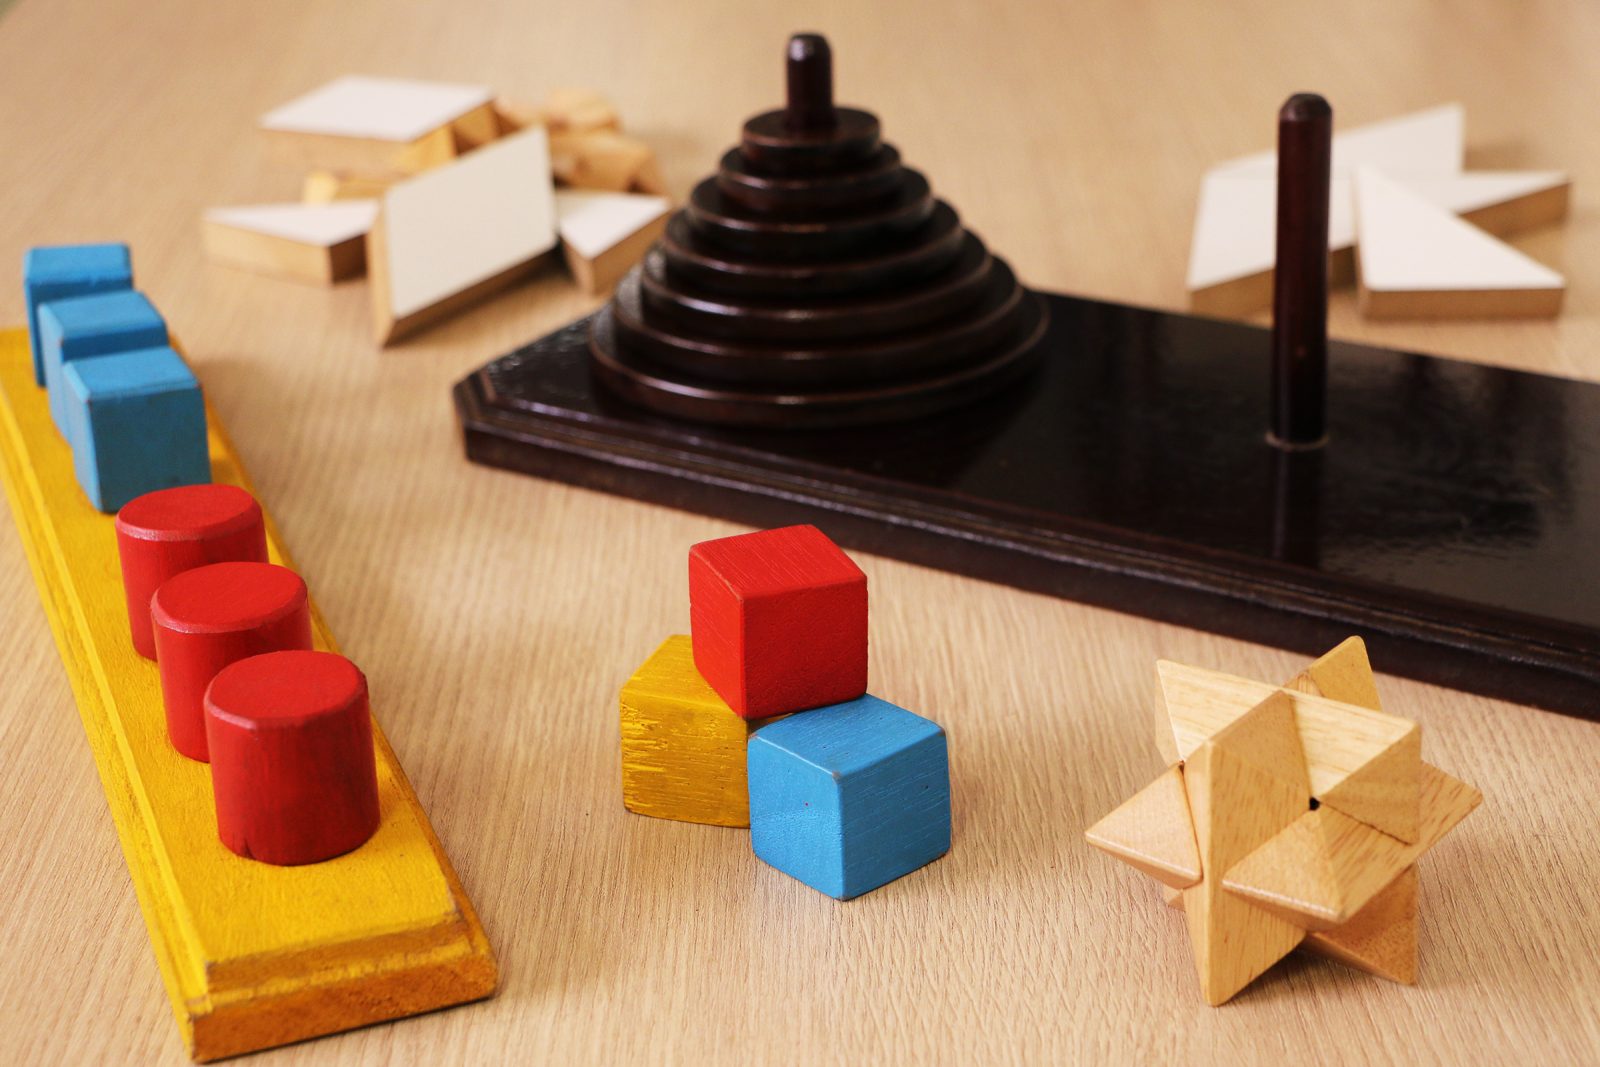 jogos de madeira usados na atividade: tangram, quebra-cabeças tridimensional, torre de Hanói